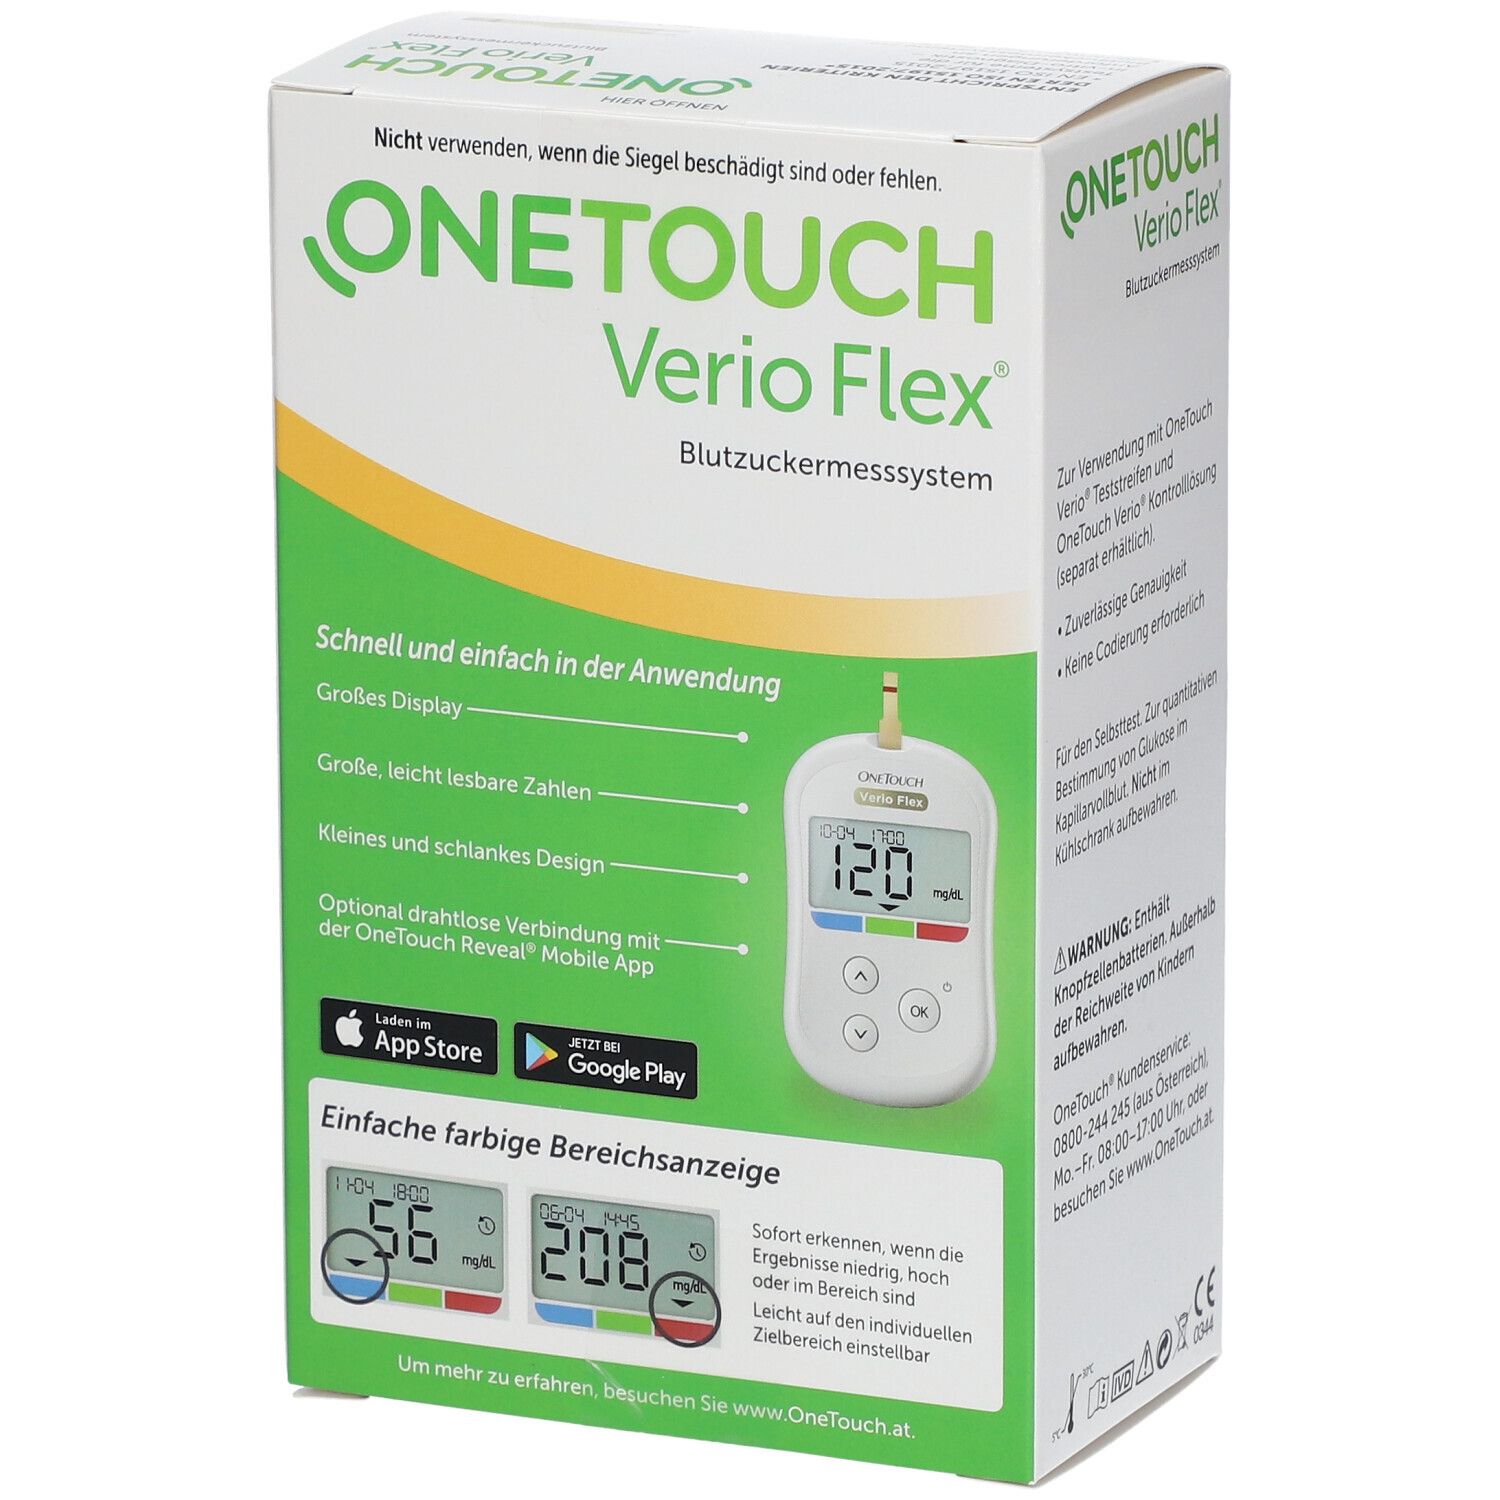 ONETOUCH ONE Touch Verio Flex Blutzuckermesssystem mg/dl 1 St Gerät